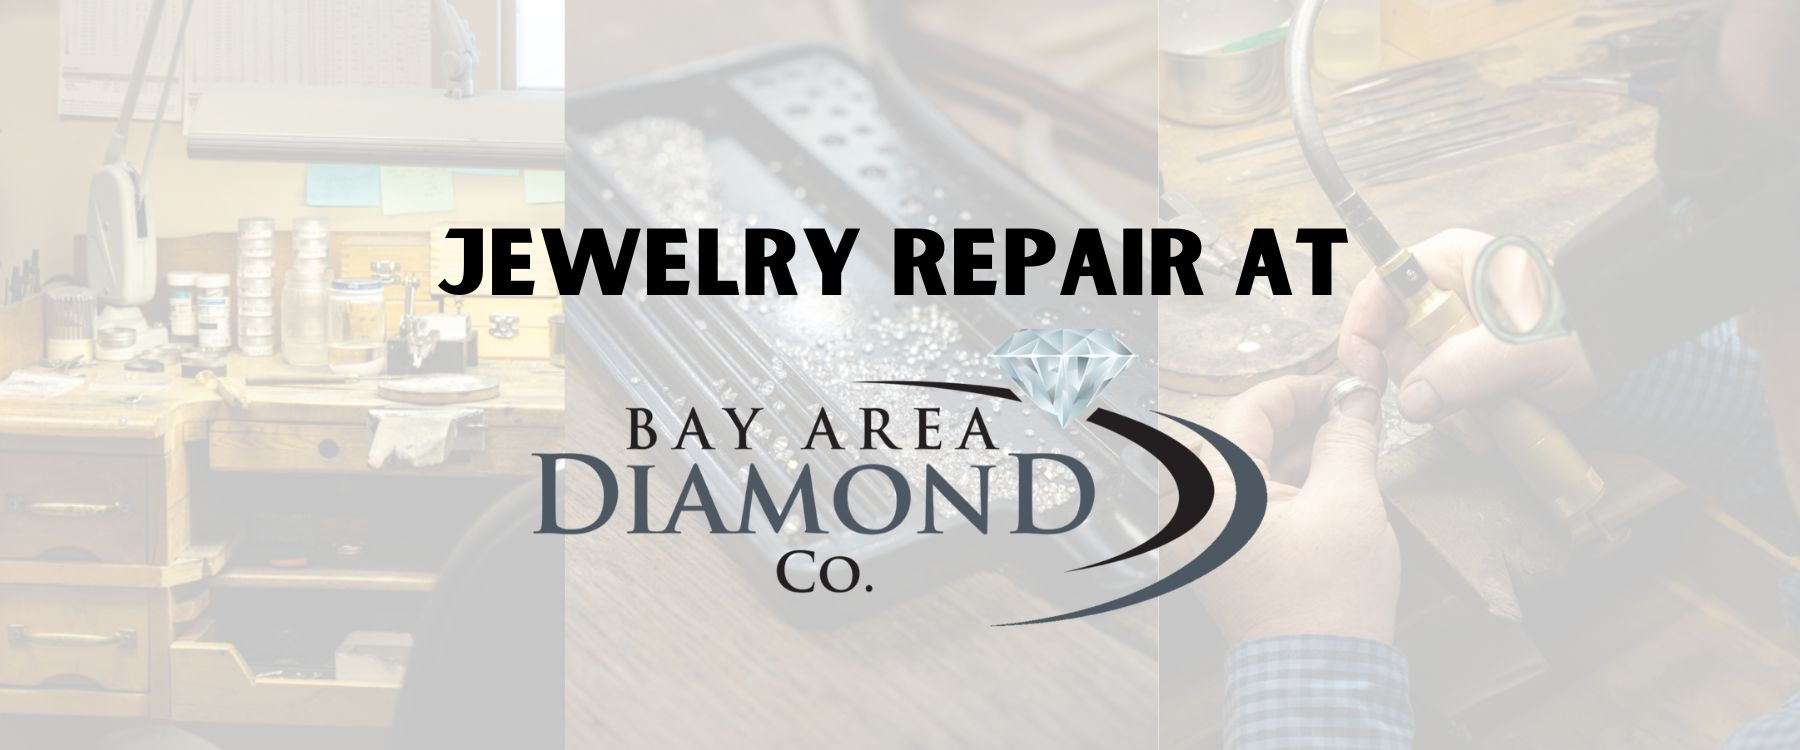 Bay Area Diamond Company Green Bay, WI